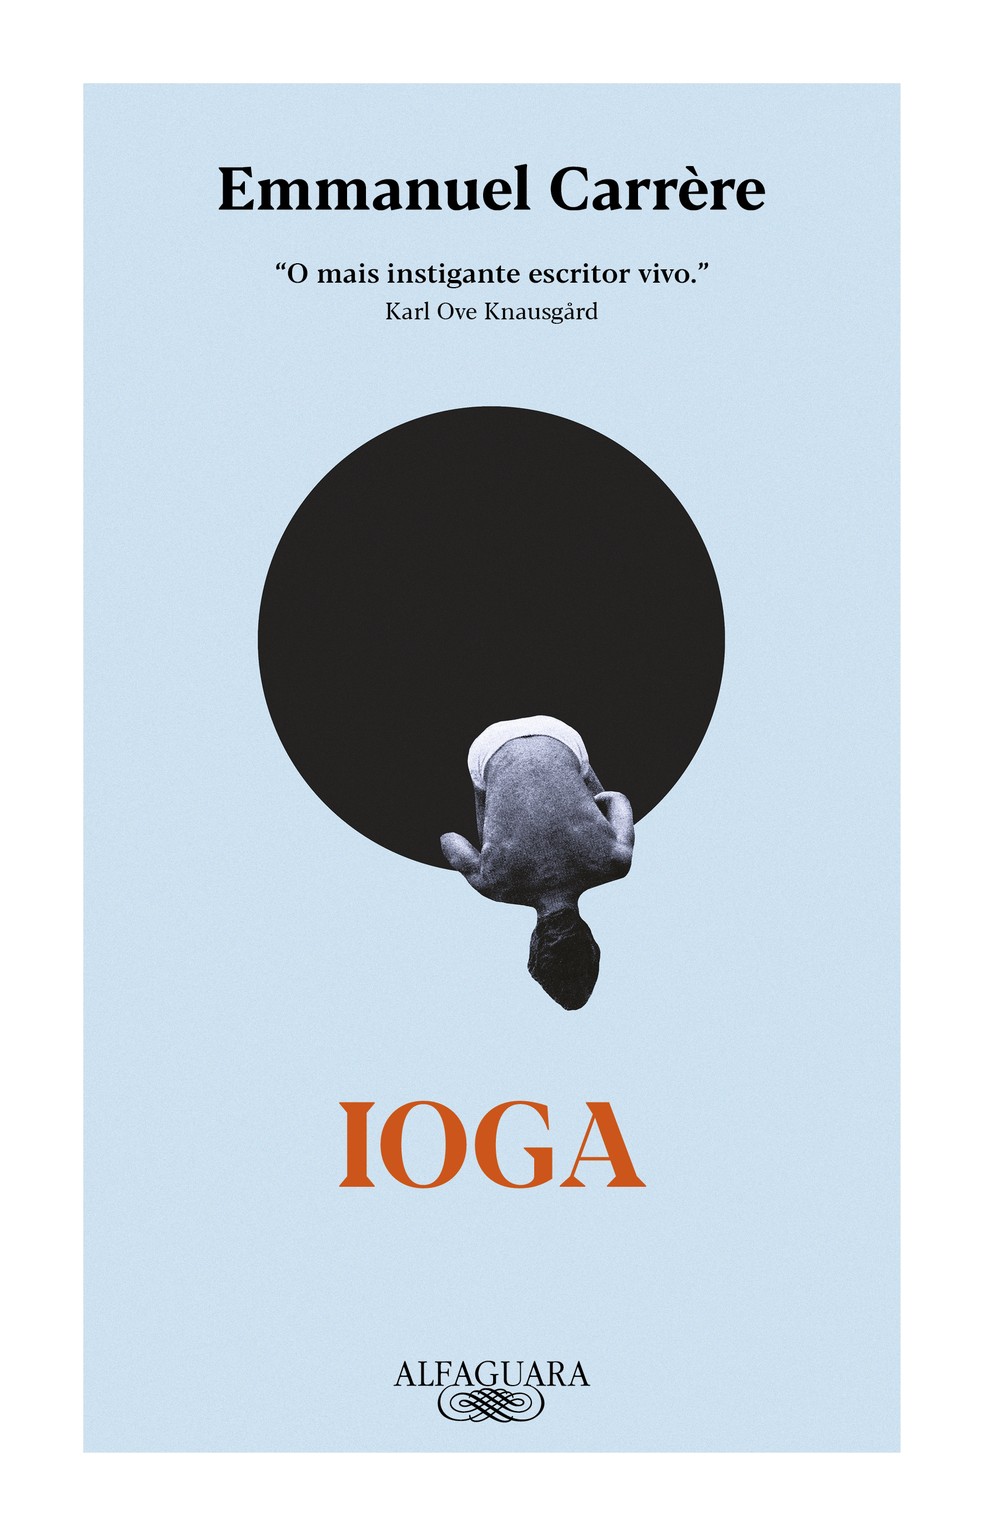 Capa de "Ioga", romance do escritor francês Emmanuel Carrère — Foto: Reprodução